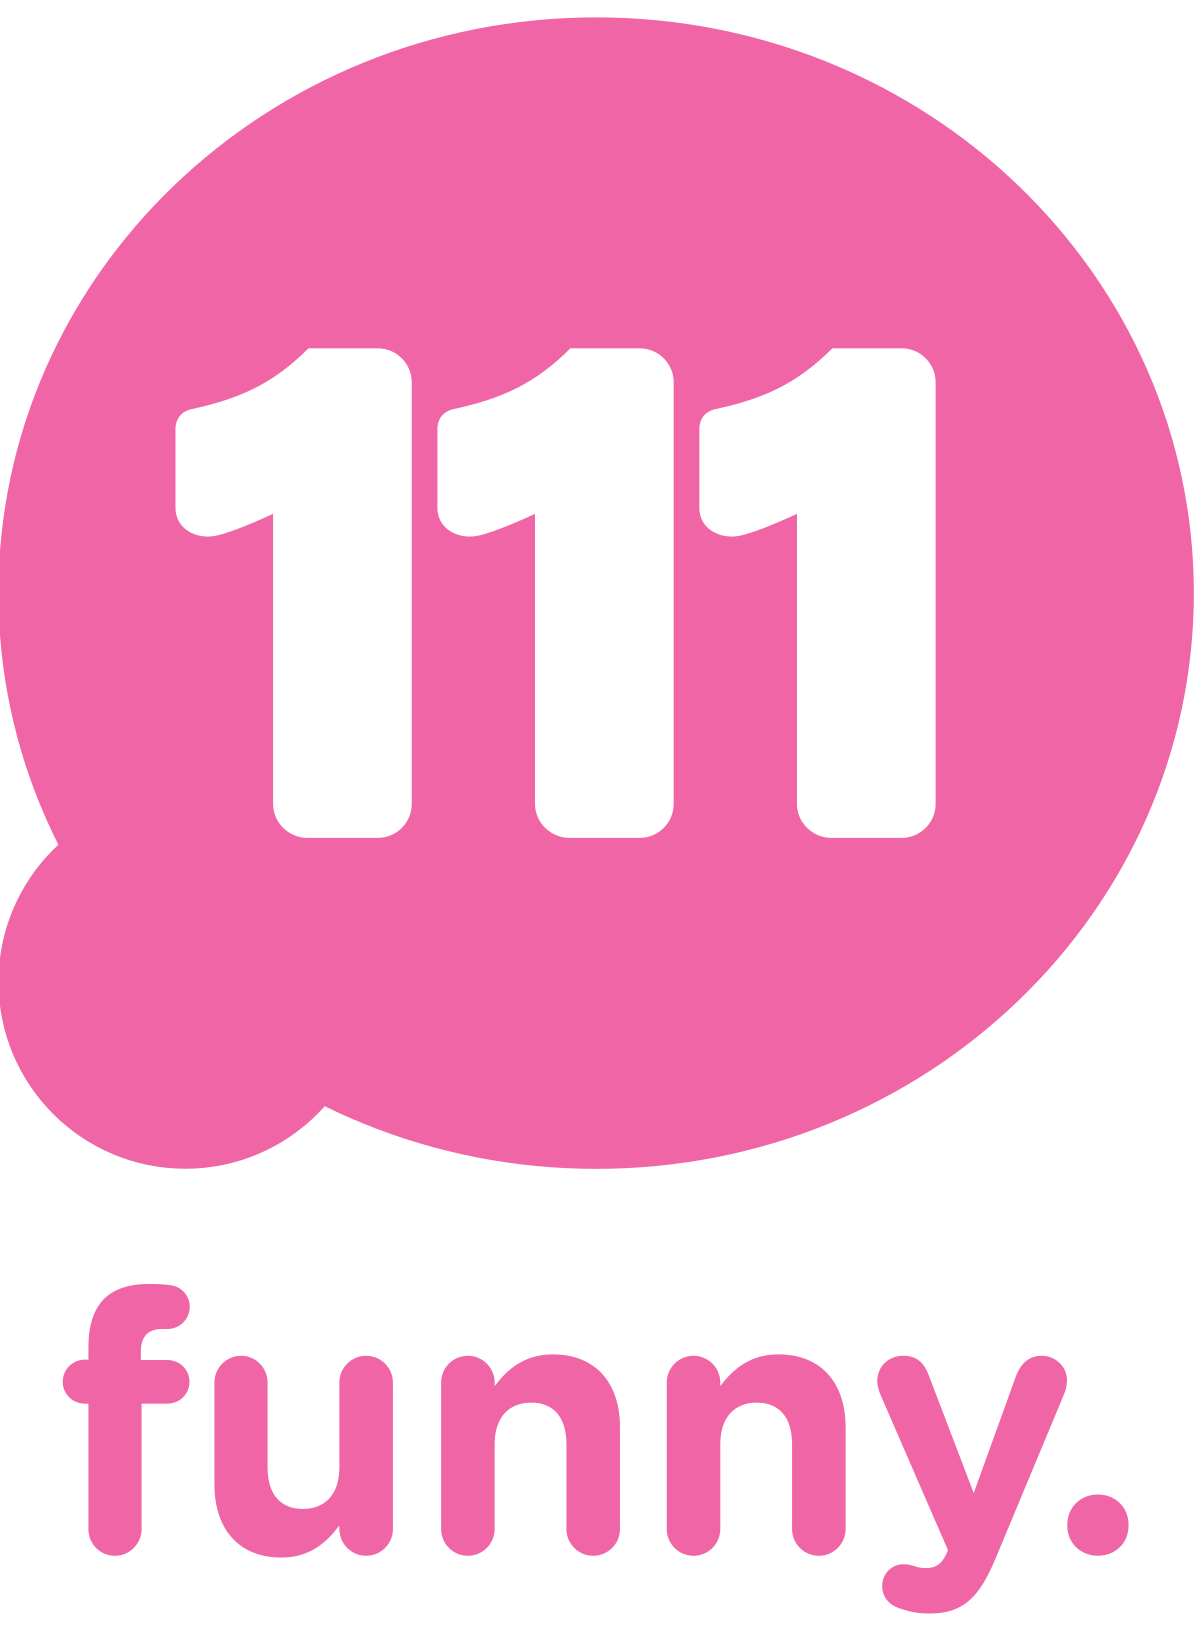 Funny Australian Logo - 111 (Australian TV channel)